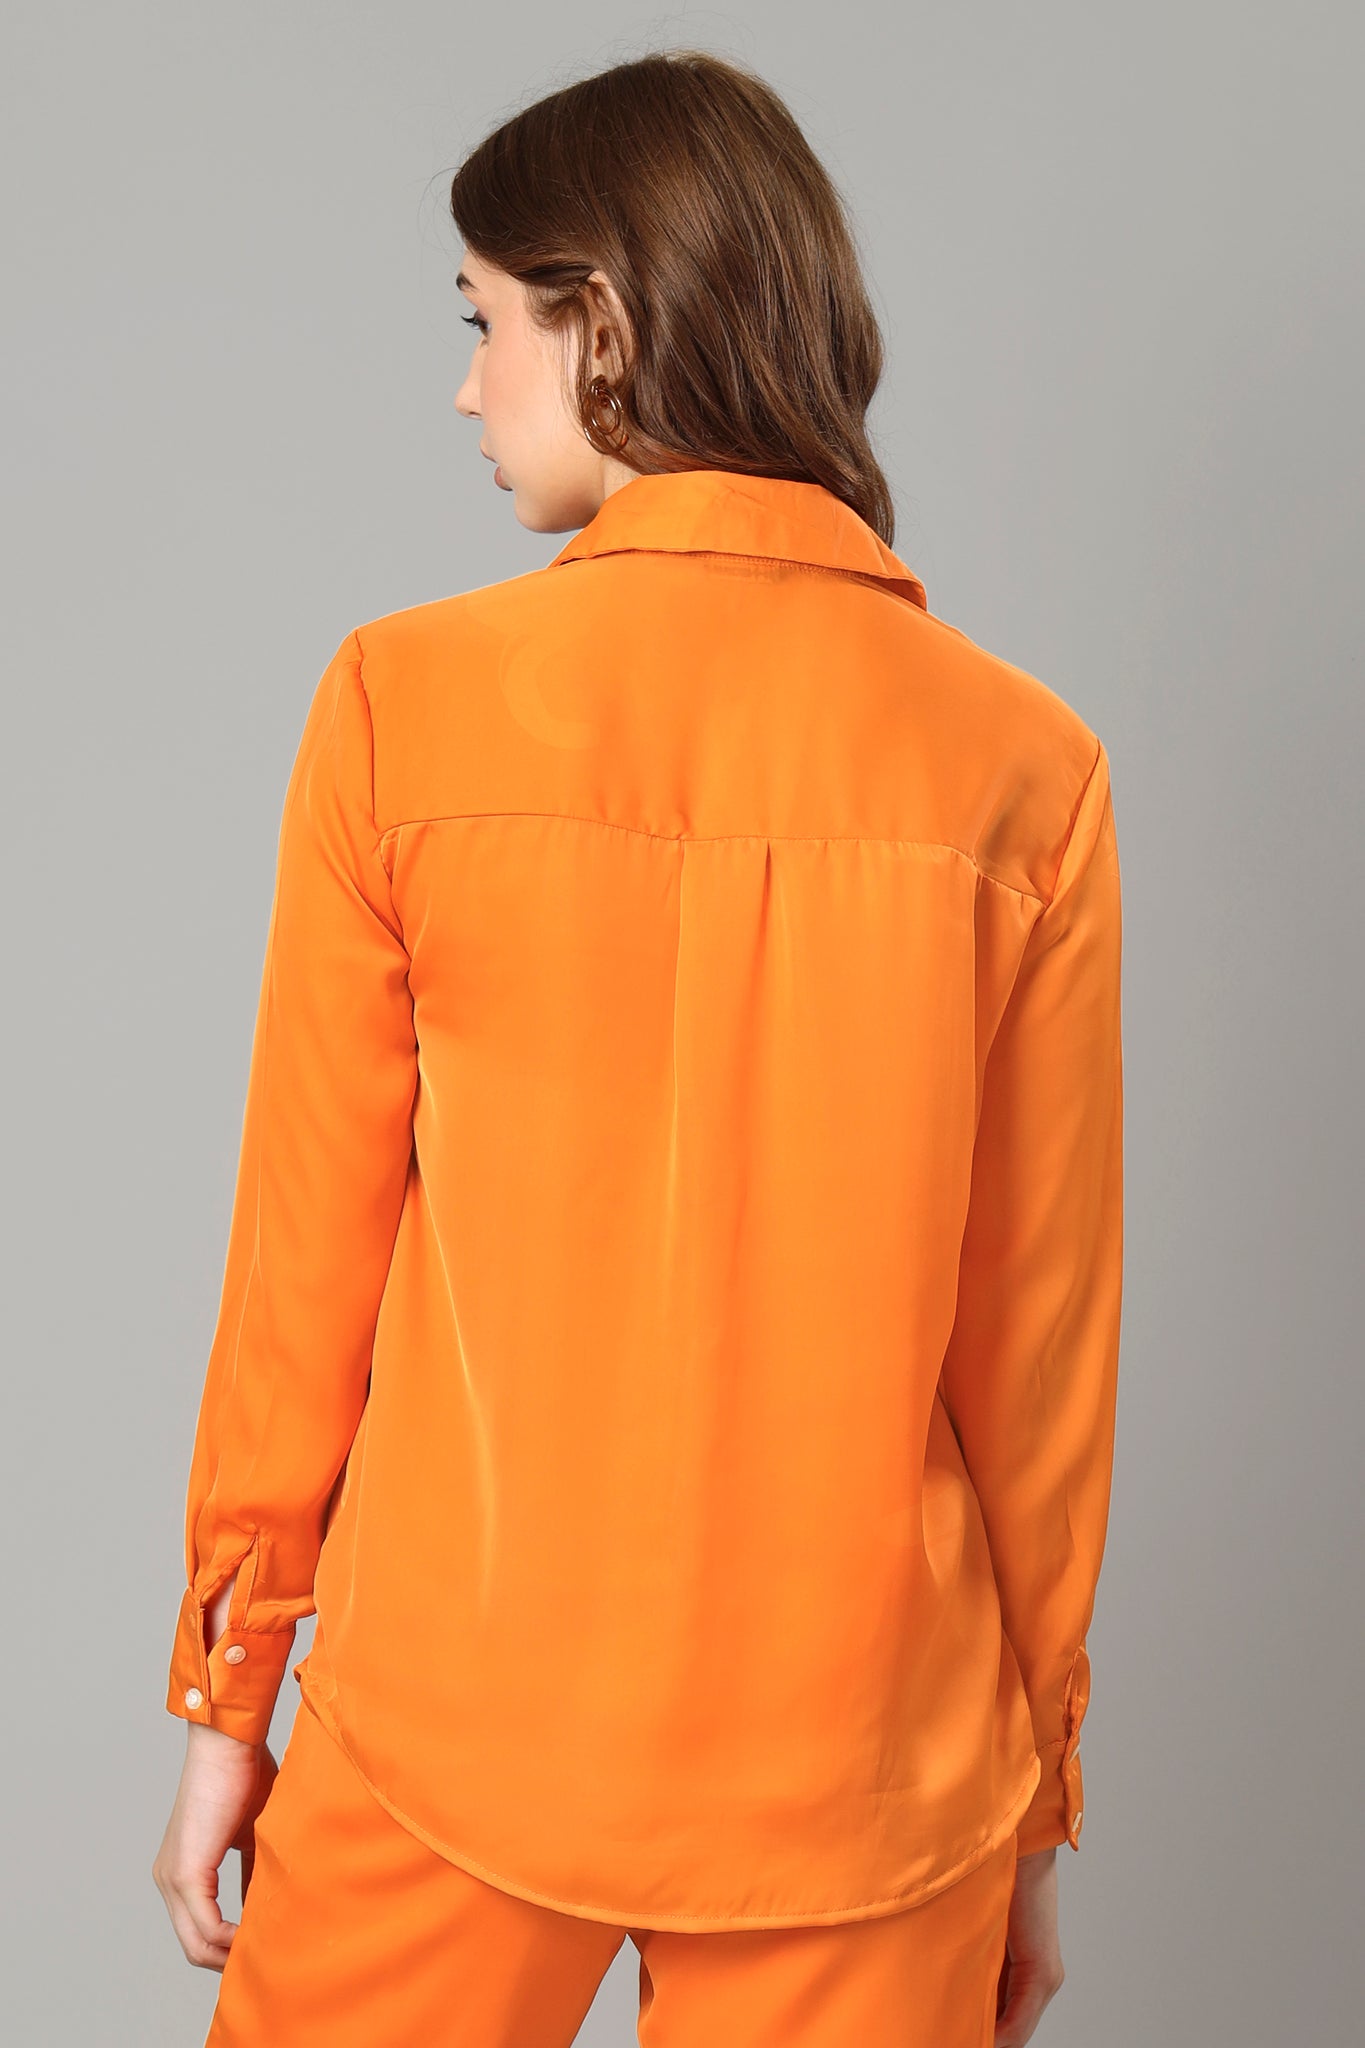 Sunset Orange Shirt For Women